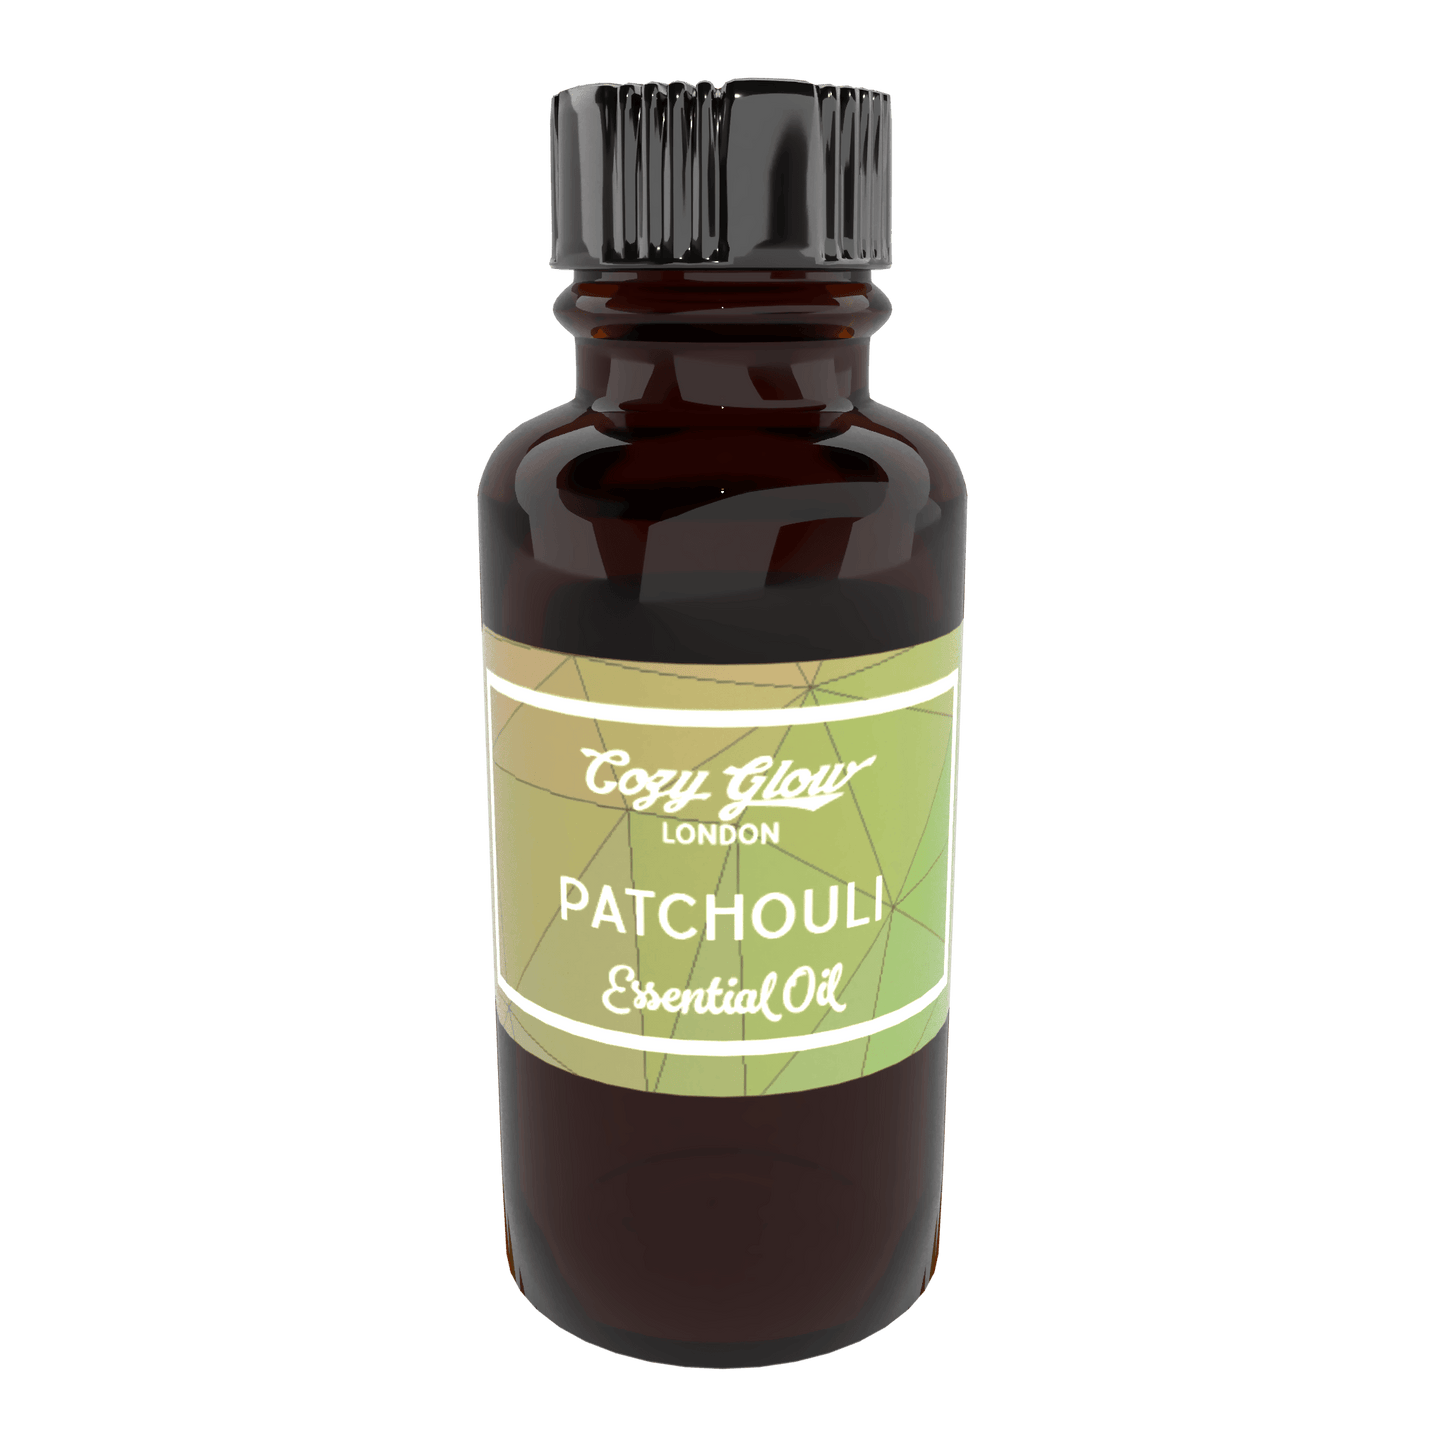 Cozy Glow Patchouli 10 ml Essential Oil